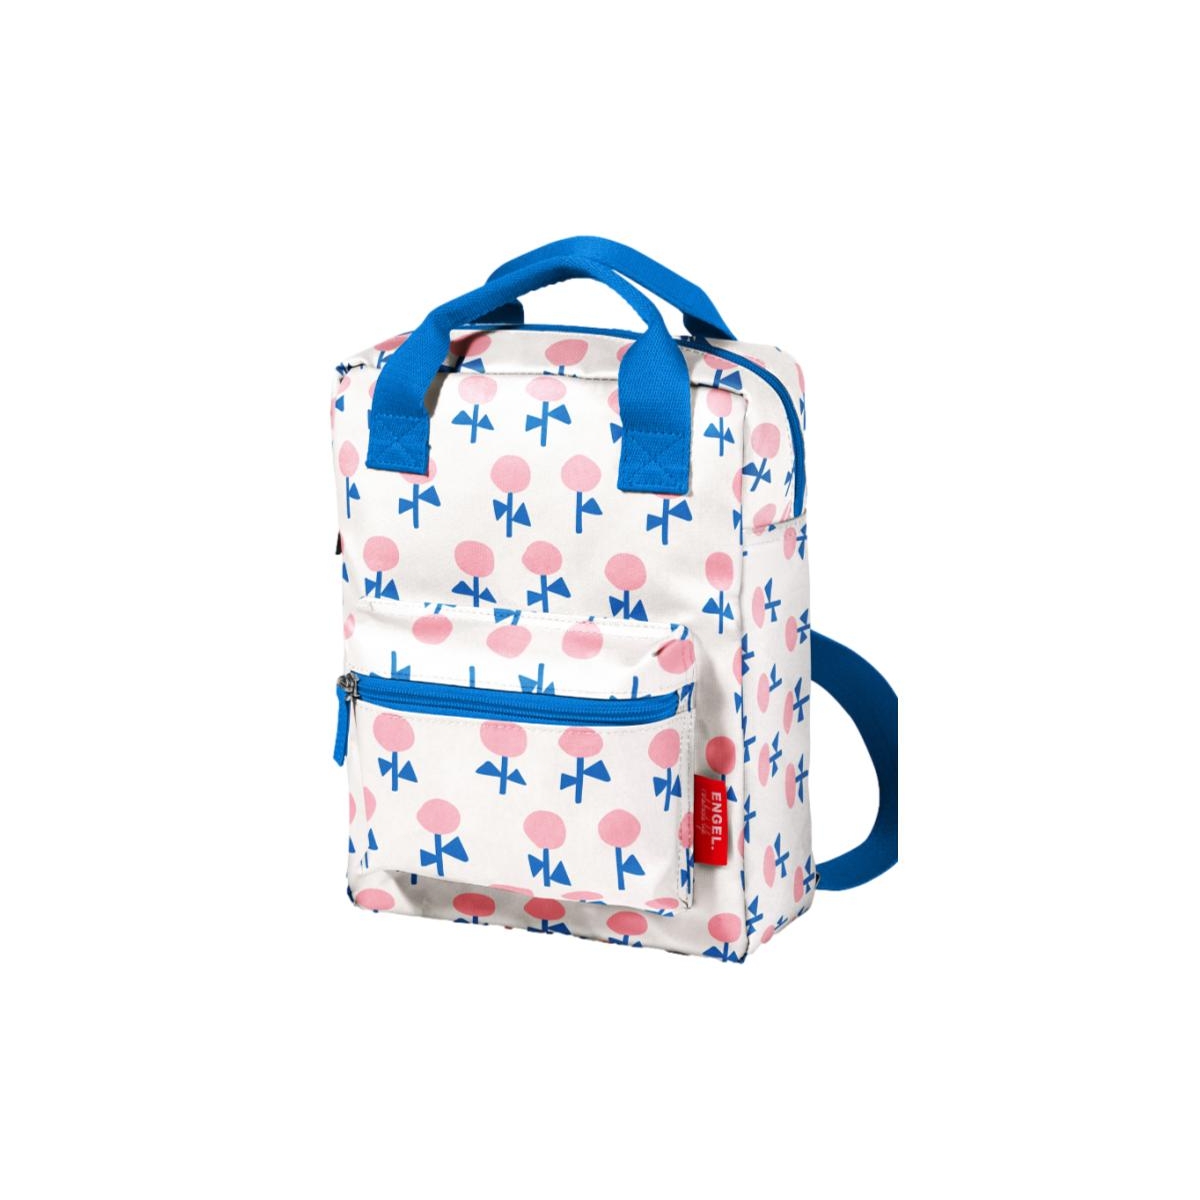 Engel. - Flower backpack multi - Backpacks - 11.360